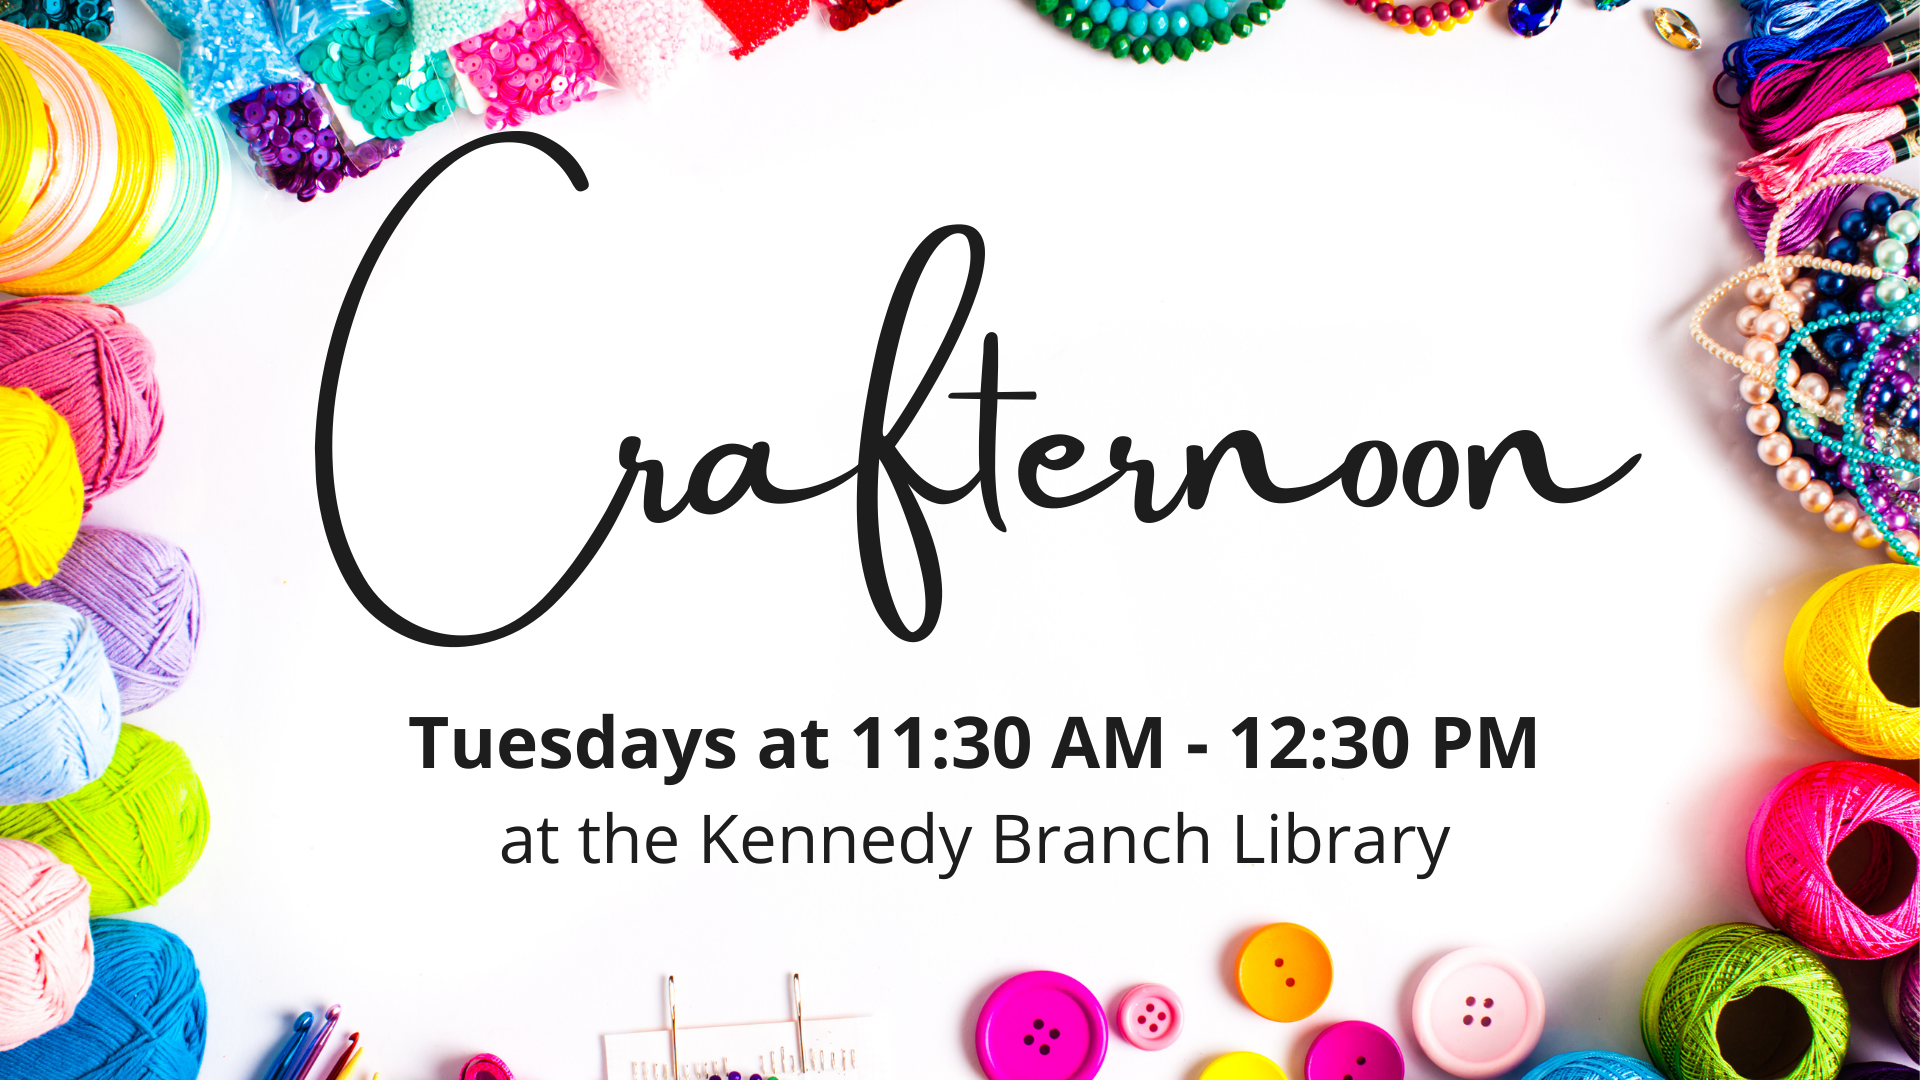 Crafternoon - Kennedy Branch